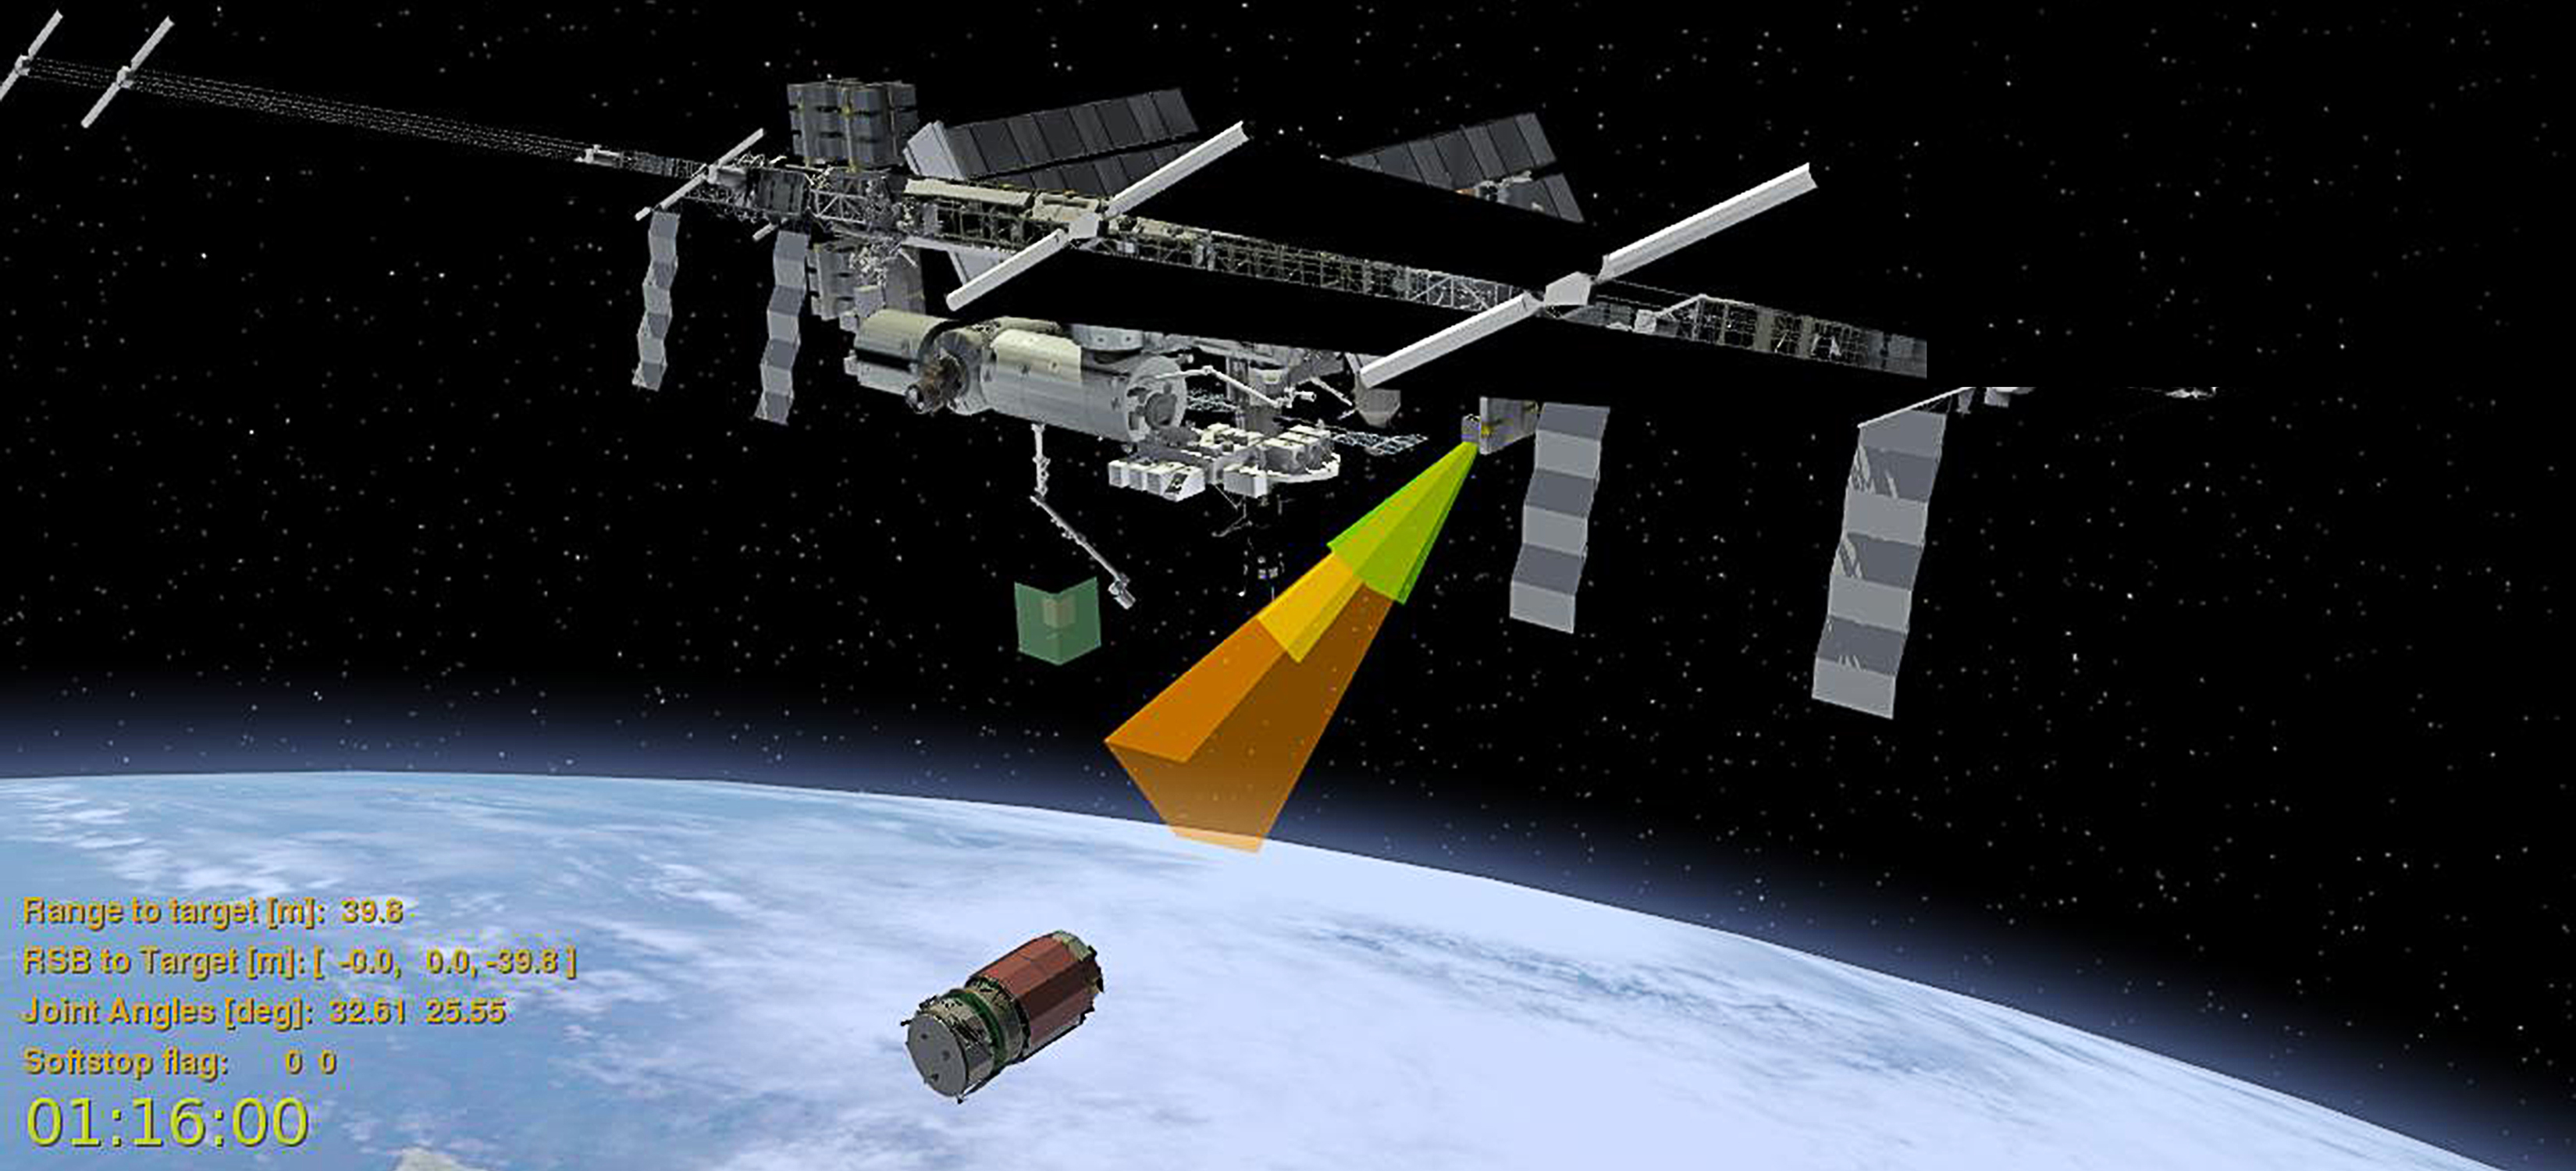 NASA планирует испытание новых технологий по ремонту спутников